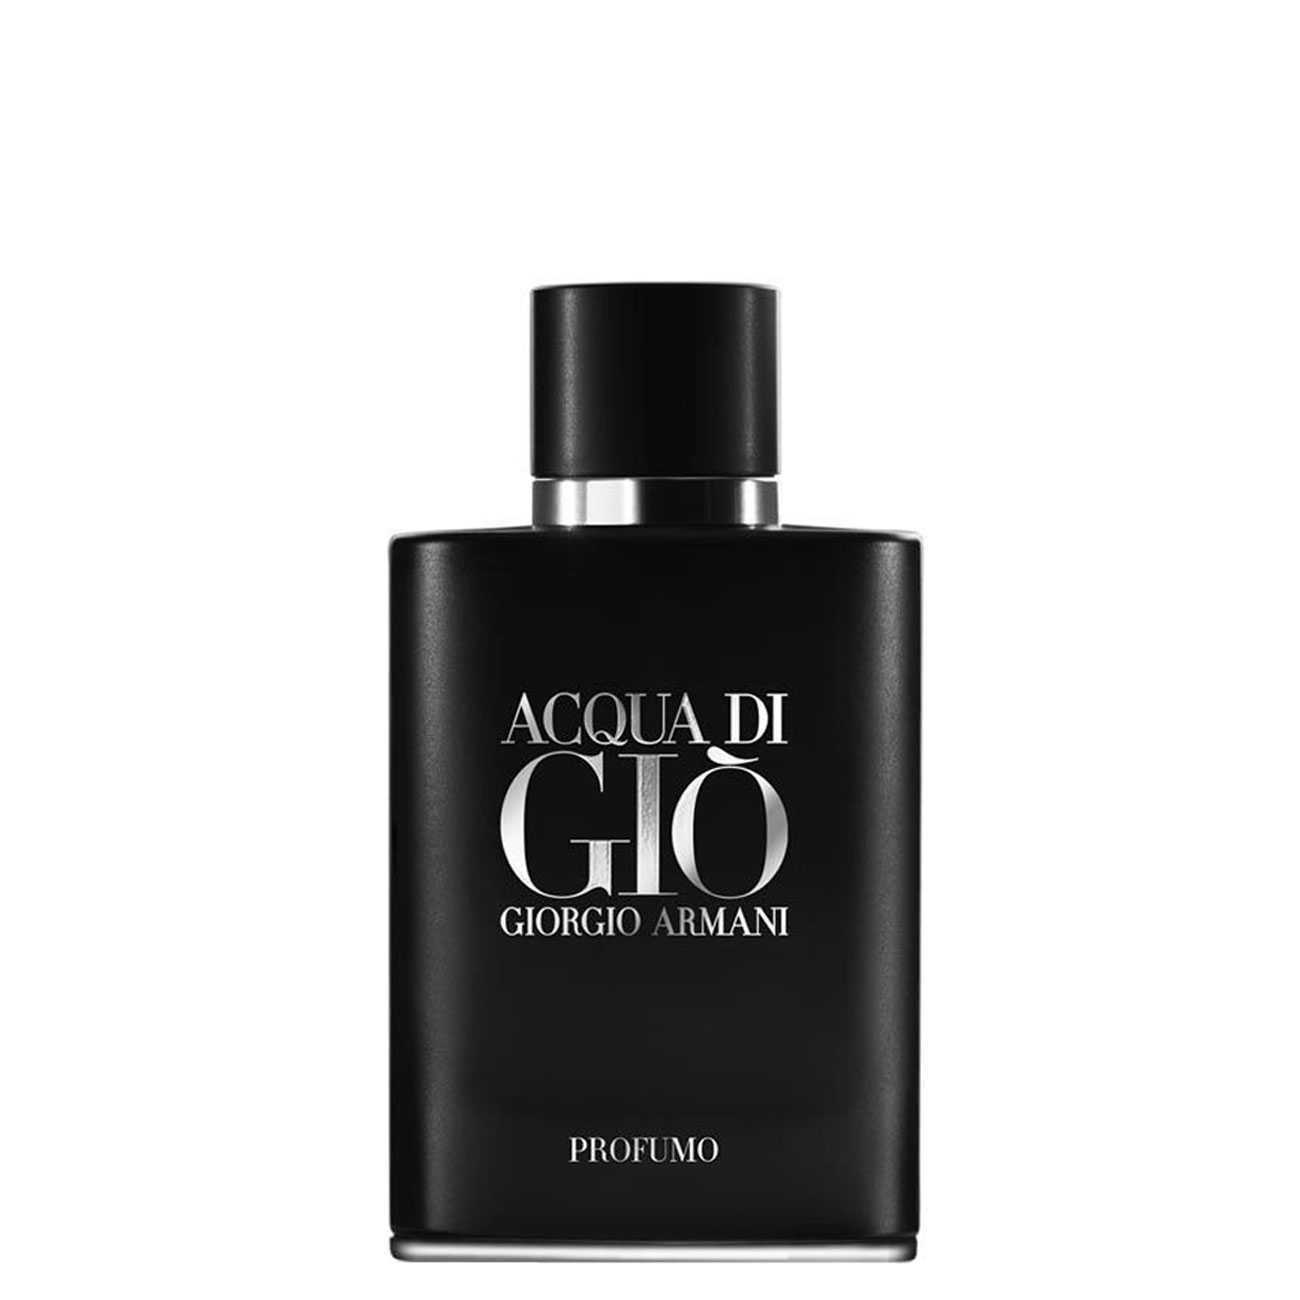 Apa de Parfum Giorgio Armani ACQUA DI GIO PROFUMO 75ml cu comanda online